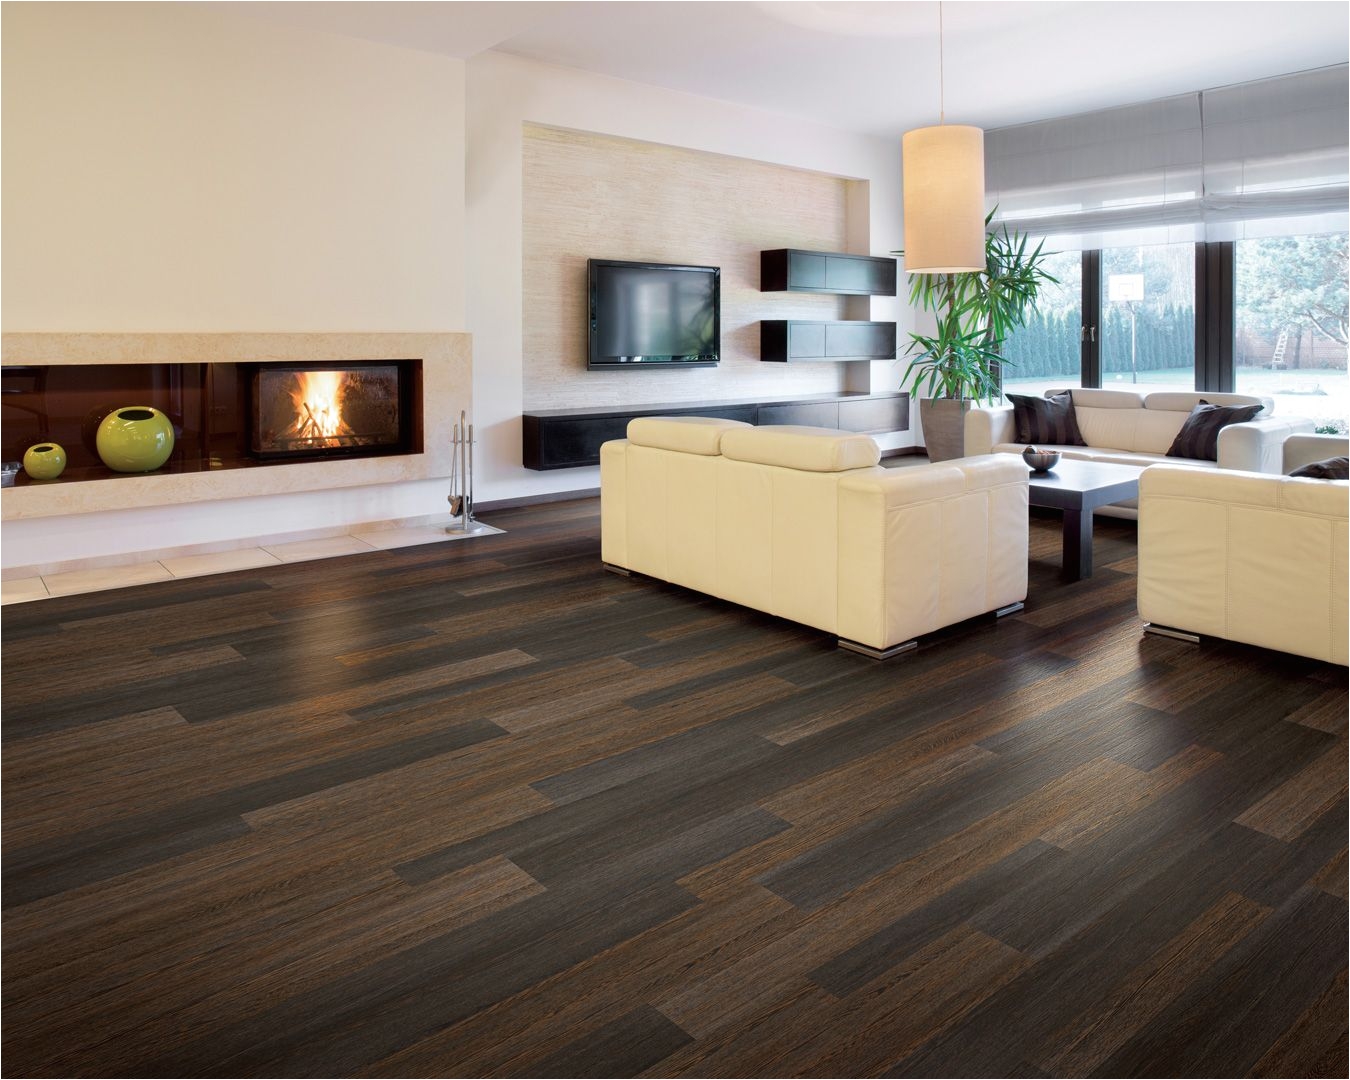 Coretec Plus Laminate Flooring Vinyl Plank Flooring Coretec Plus Hd Xl Enhanced Design Floors